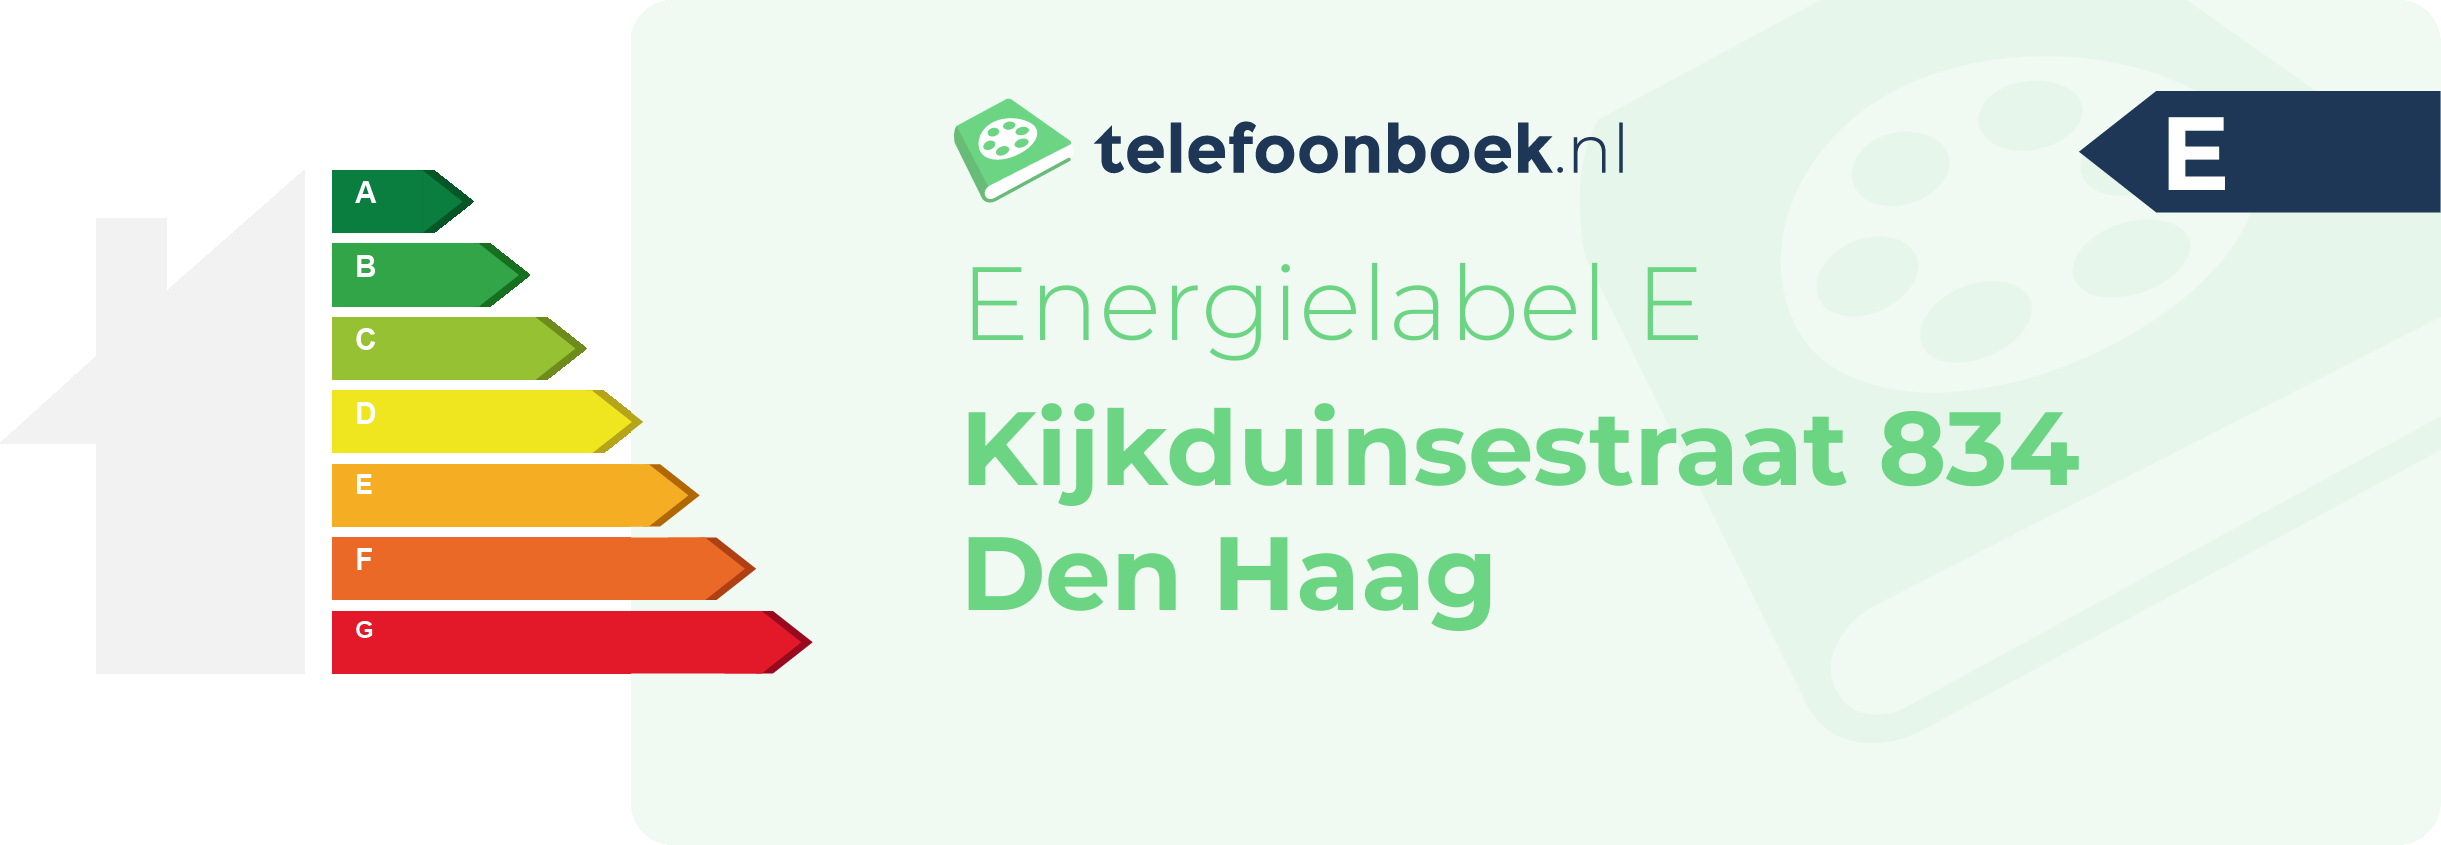 Energielabel Kijkduinsestraat 834 Den Haag